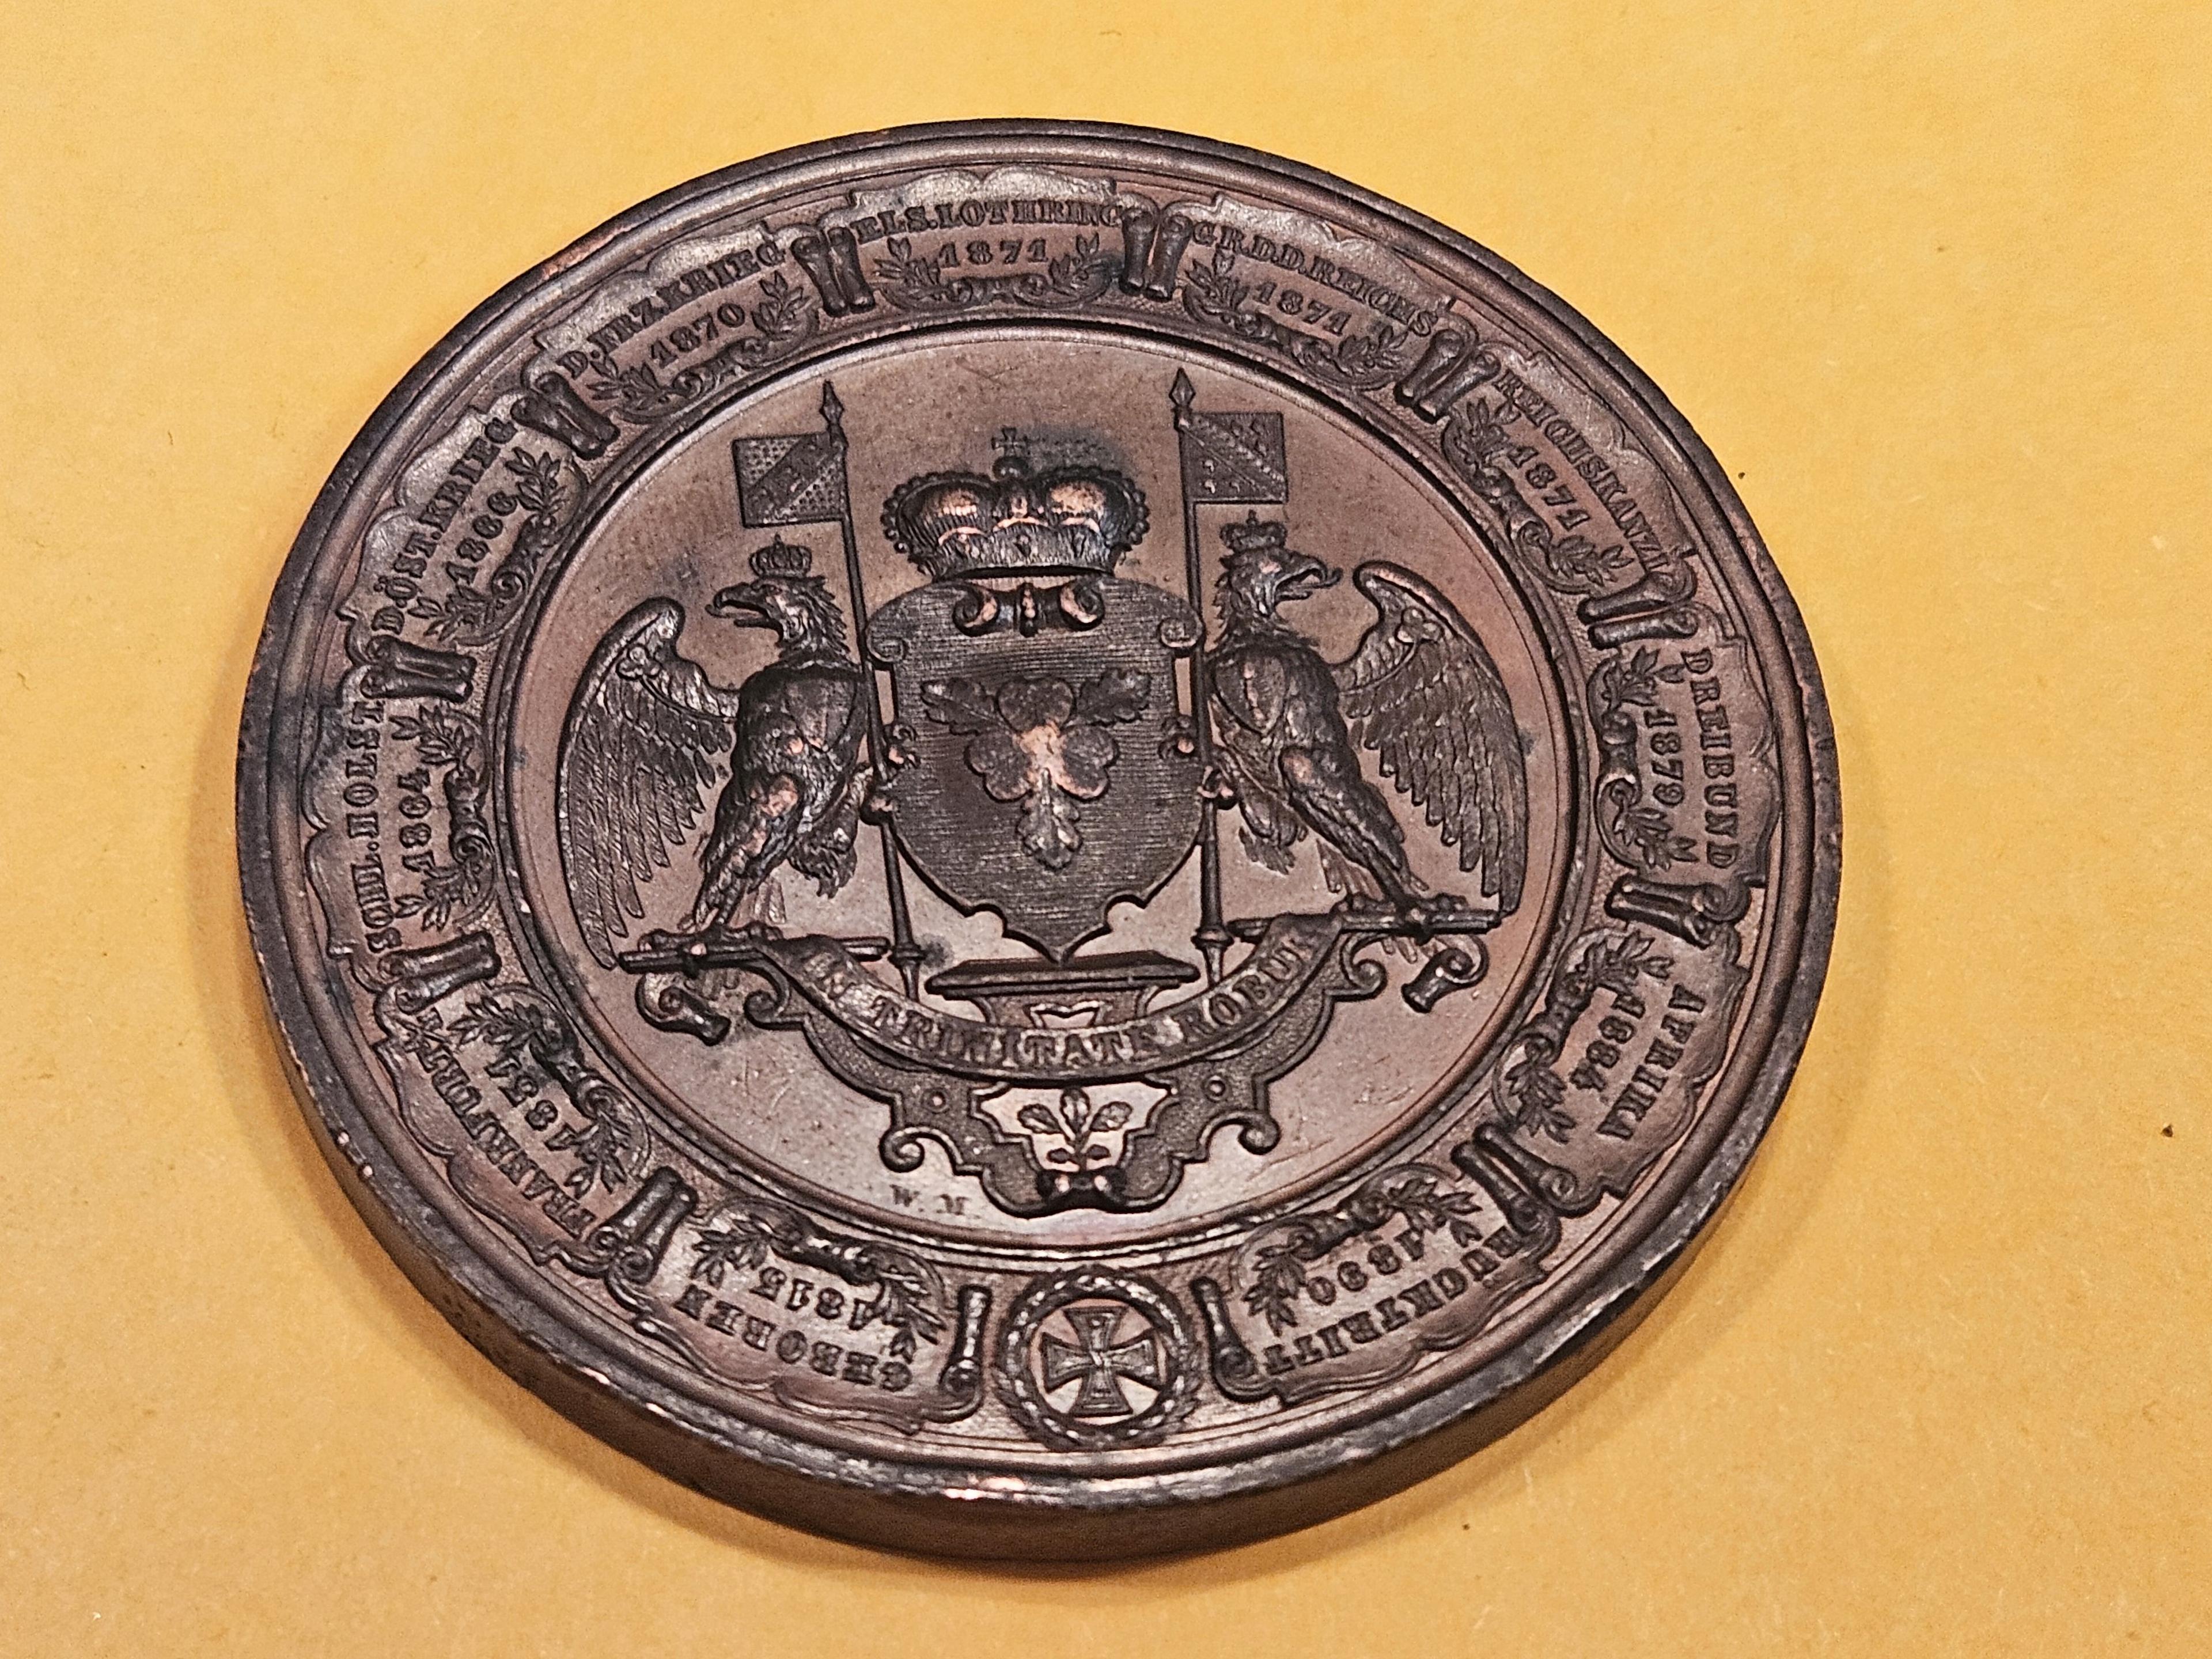 Cool, High-Relief 1890 Chancellor Otto von Bismarck Medal